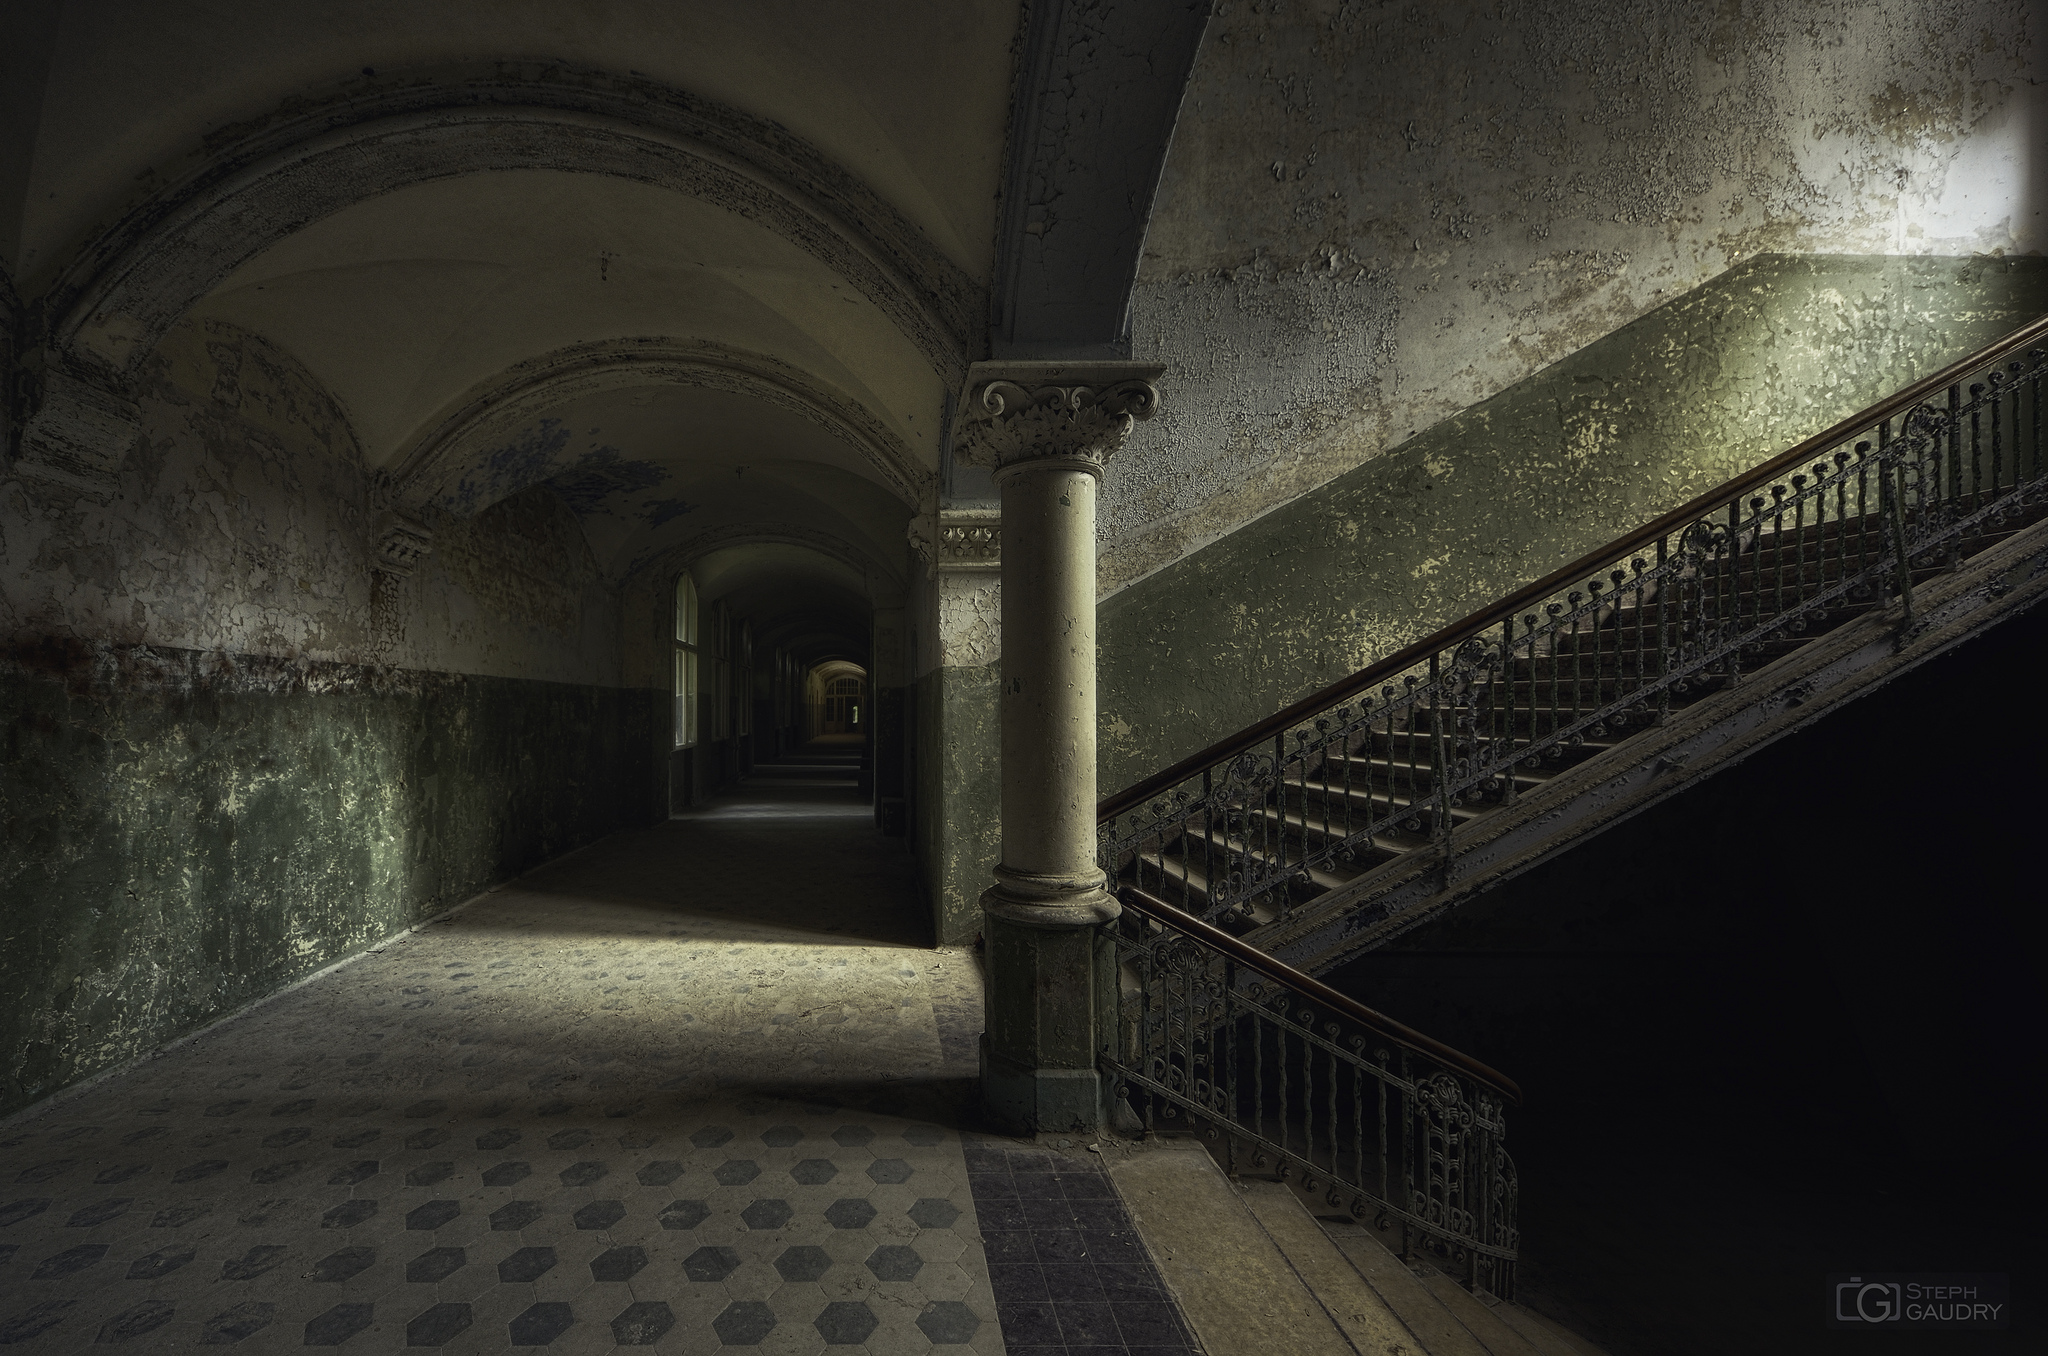 Beelitz Heilstatten - couloir et escalier du pavillon des hommes [Click to start slideshow]